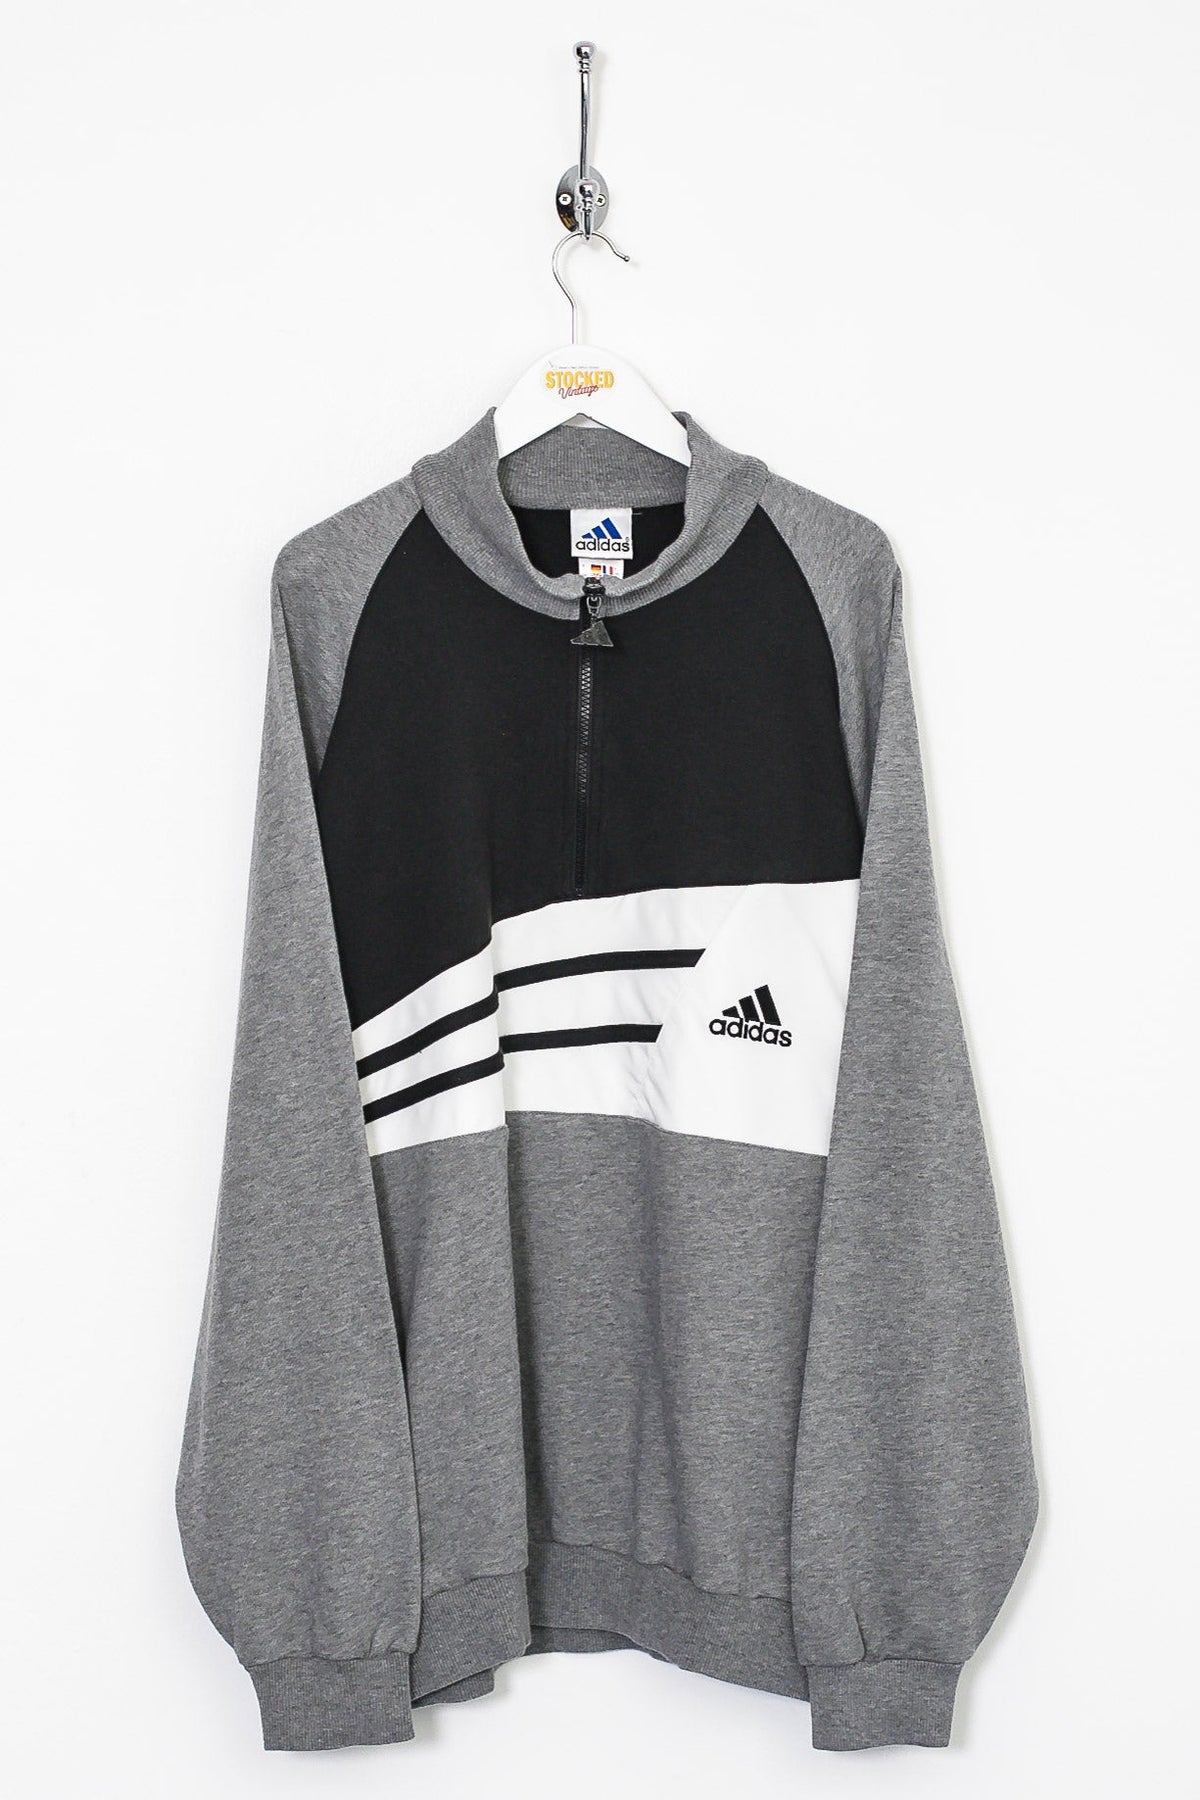 90s Adidas 1/4 Zip Sweatshirt (L)